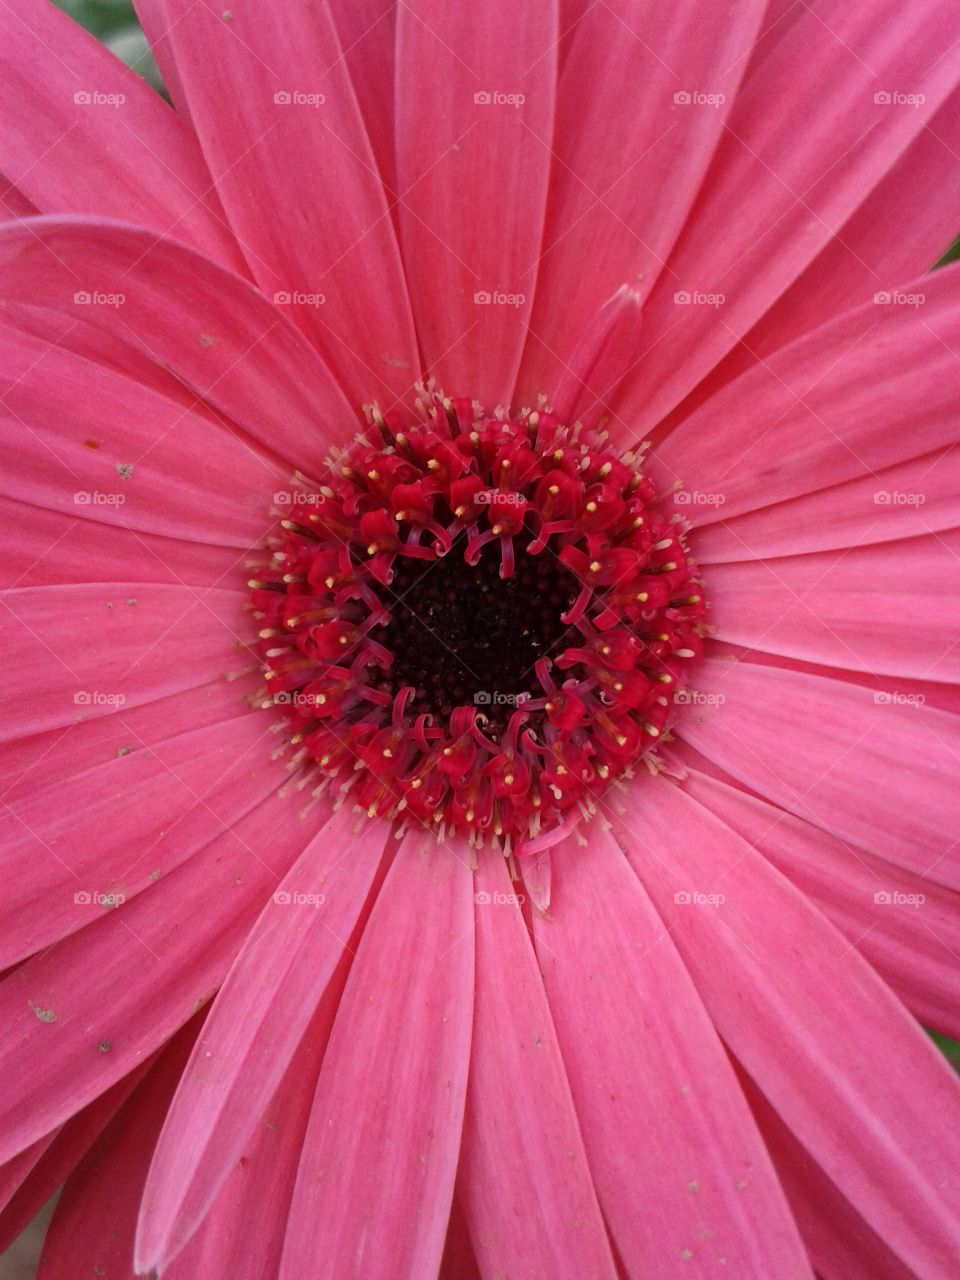 pink closeup